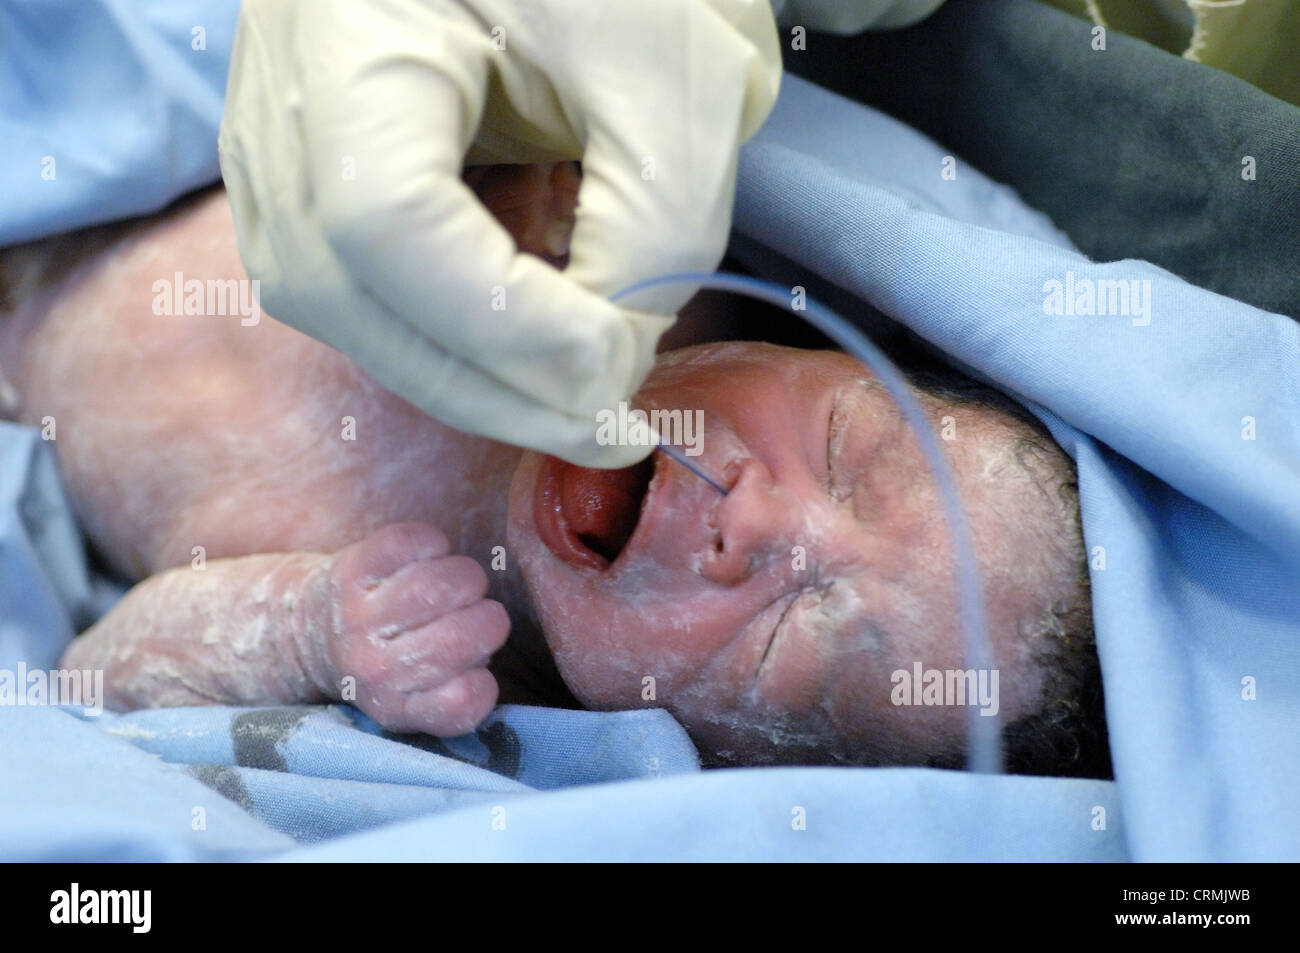 Eine behandschuhte Hand legen eine kleine Absaugung in den Mund eines  neugeborenen Babys, um unerwünschte Schleim zu entfernen Stockfotografie -  Alamy